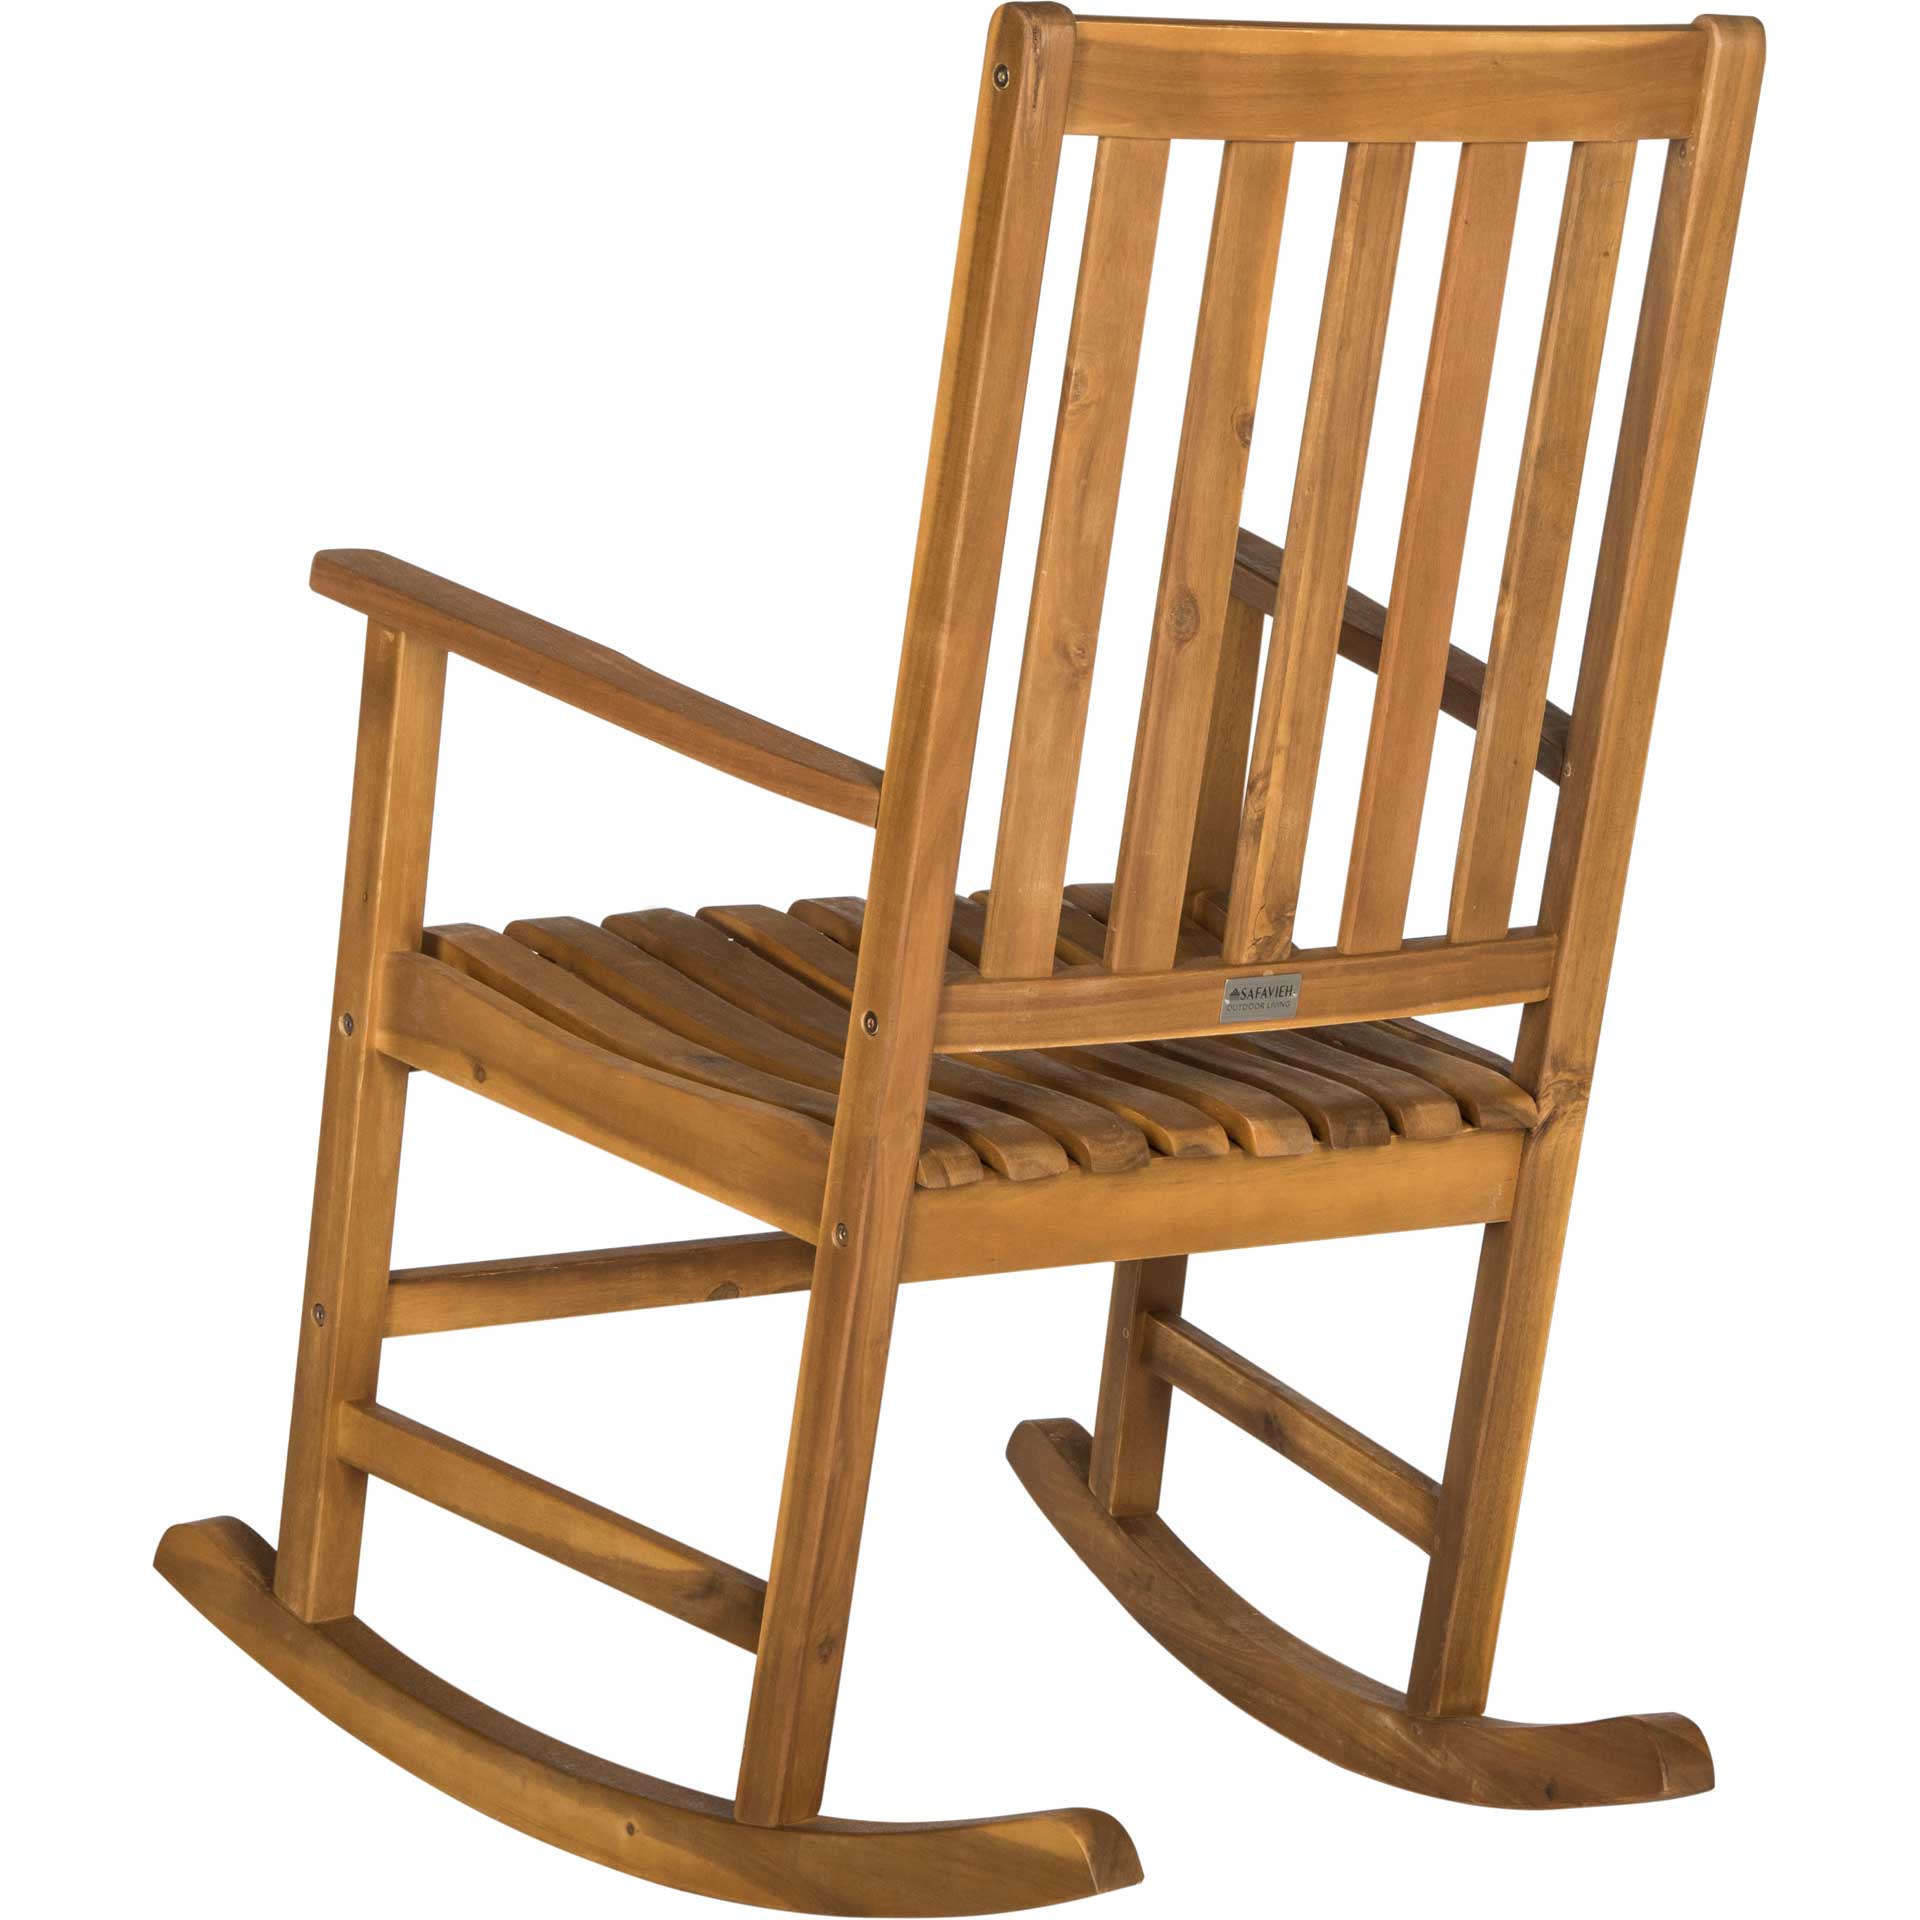 Bamboo Rocking Chair Teak